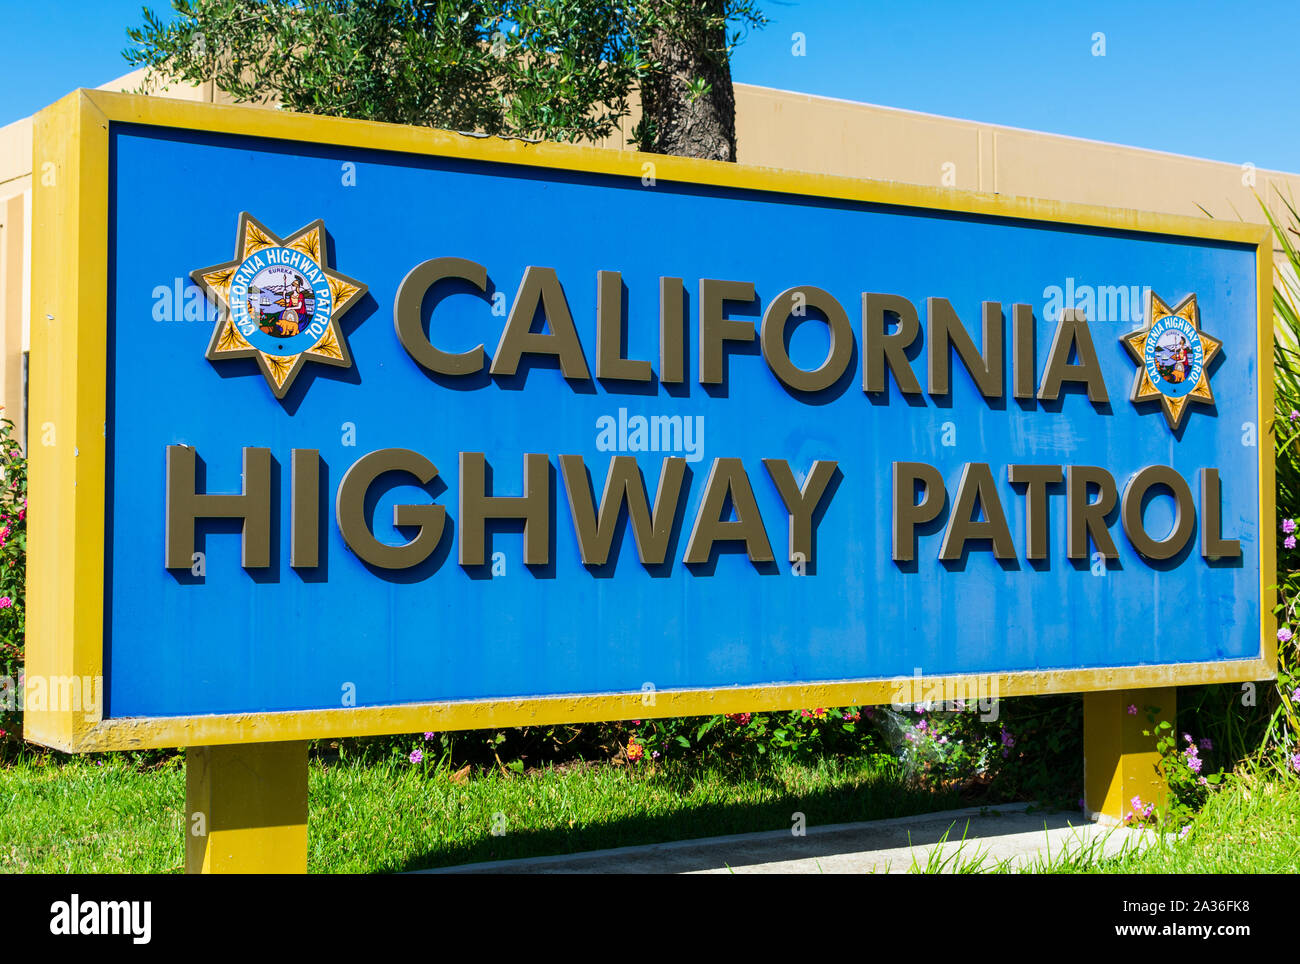 California Highway Patrol Wappen und Zeichen einer Polizeidienststelle. Kwk hat Patrol Gerichtsbarkeit über Kalifornien Routen und als staatliche Polizei bekannt Stockfoto